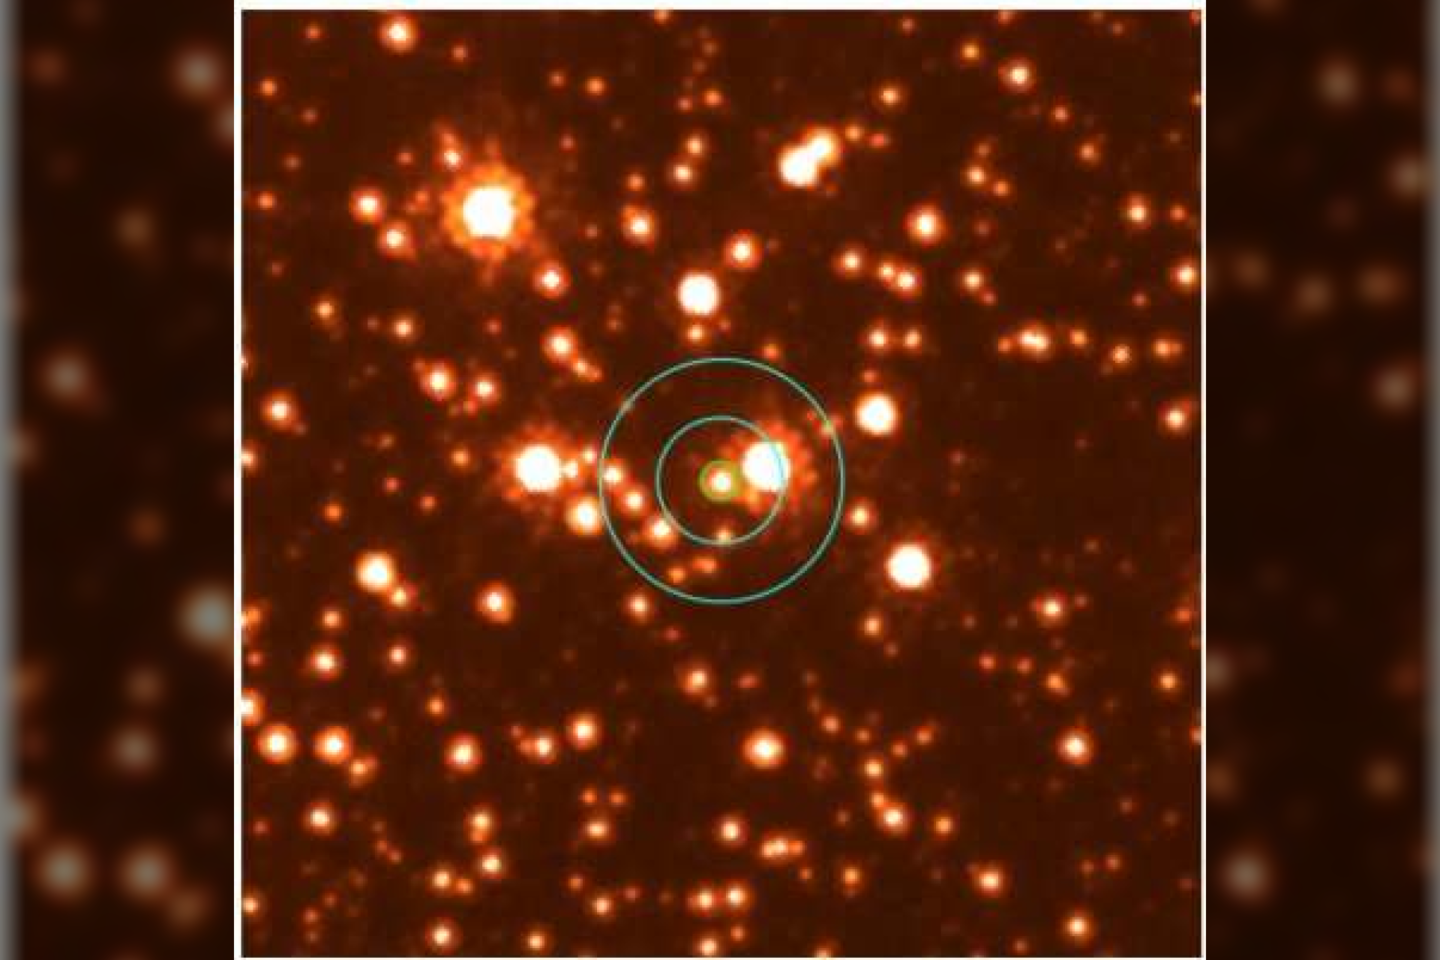  Tarptautinė tyrėjų komanda patvirtino, kad 2011 metais užfiksuotą mikrolęšiavimo įvykį sukėlė laisvai tarpžvaigždinėje erdvėje skriejanti juodoj skylė.<br> arXiv.org iliustr.